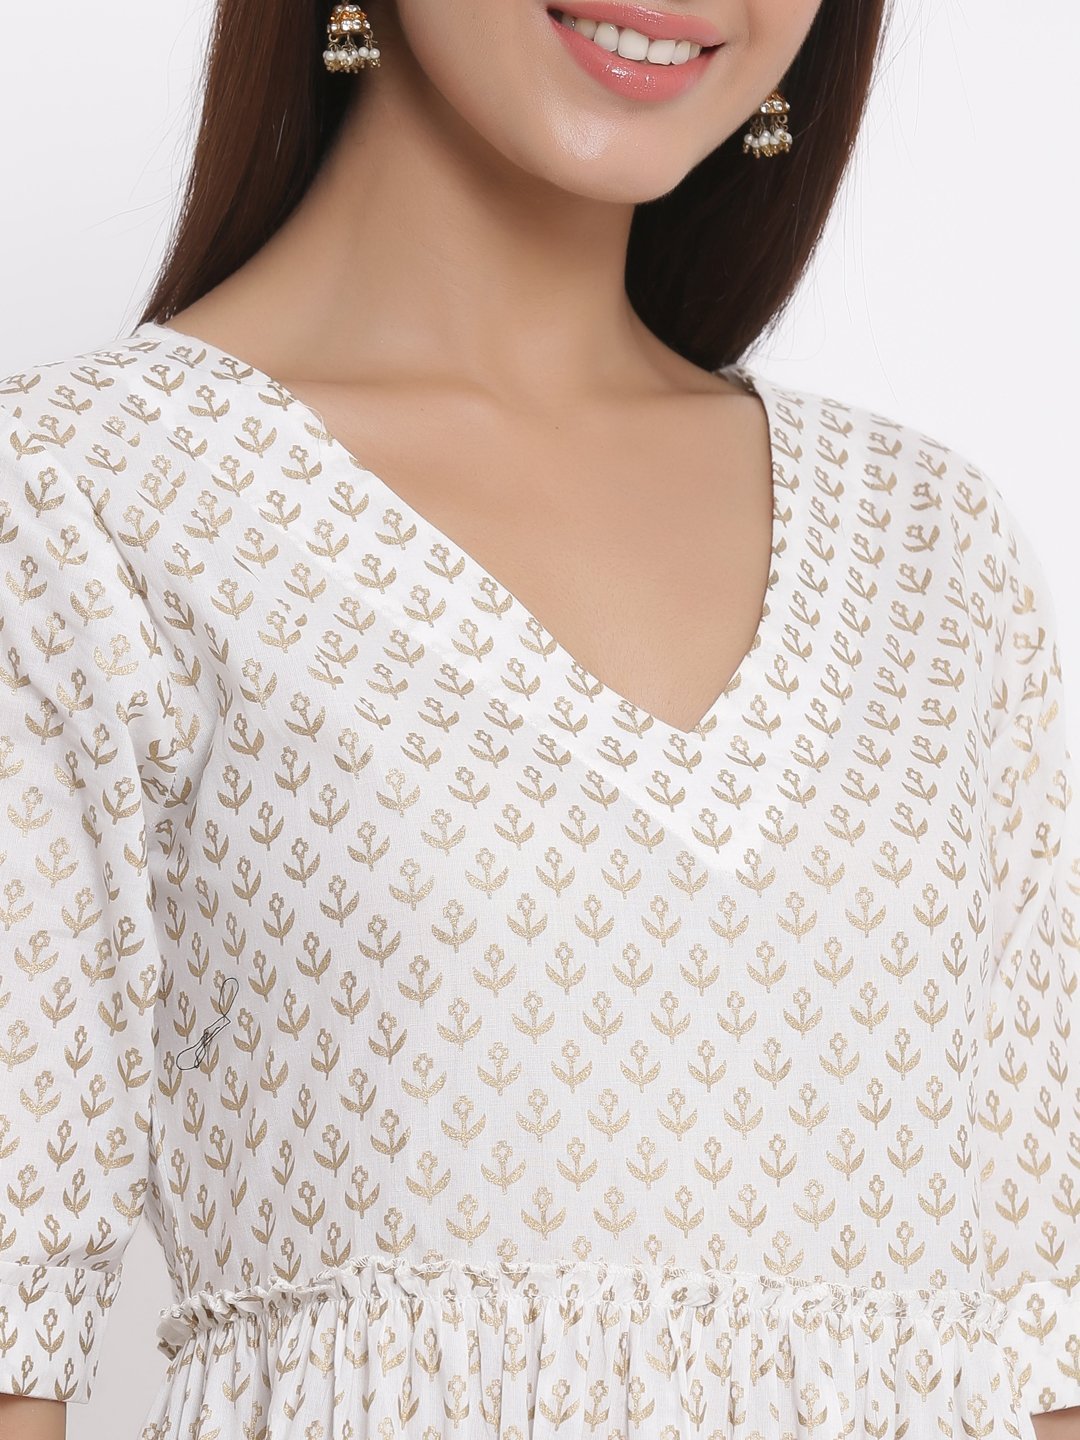 Women's White Cotton Maxi Dress by Kipek (1pc)